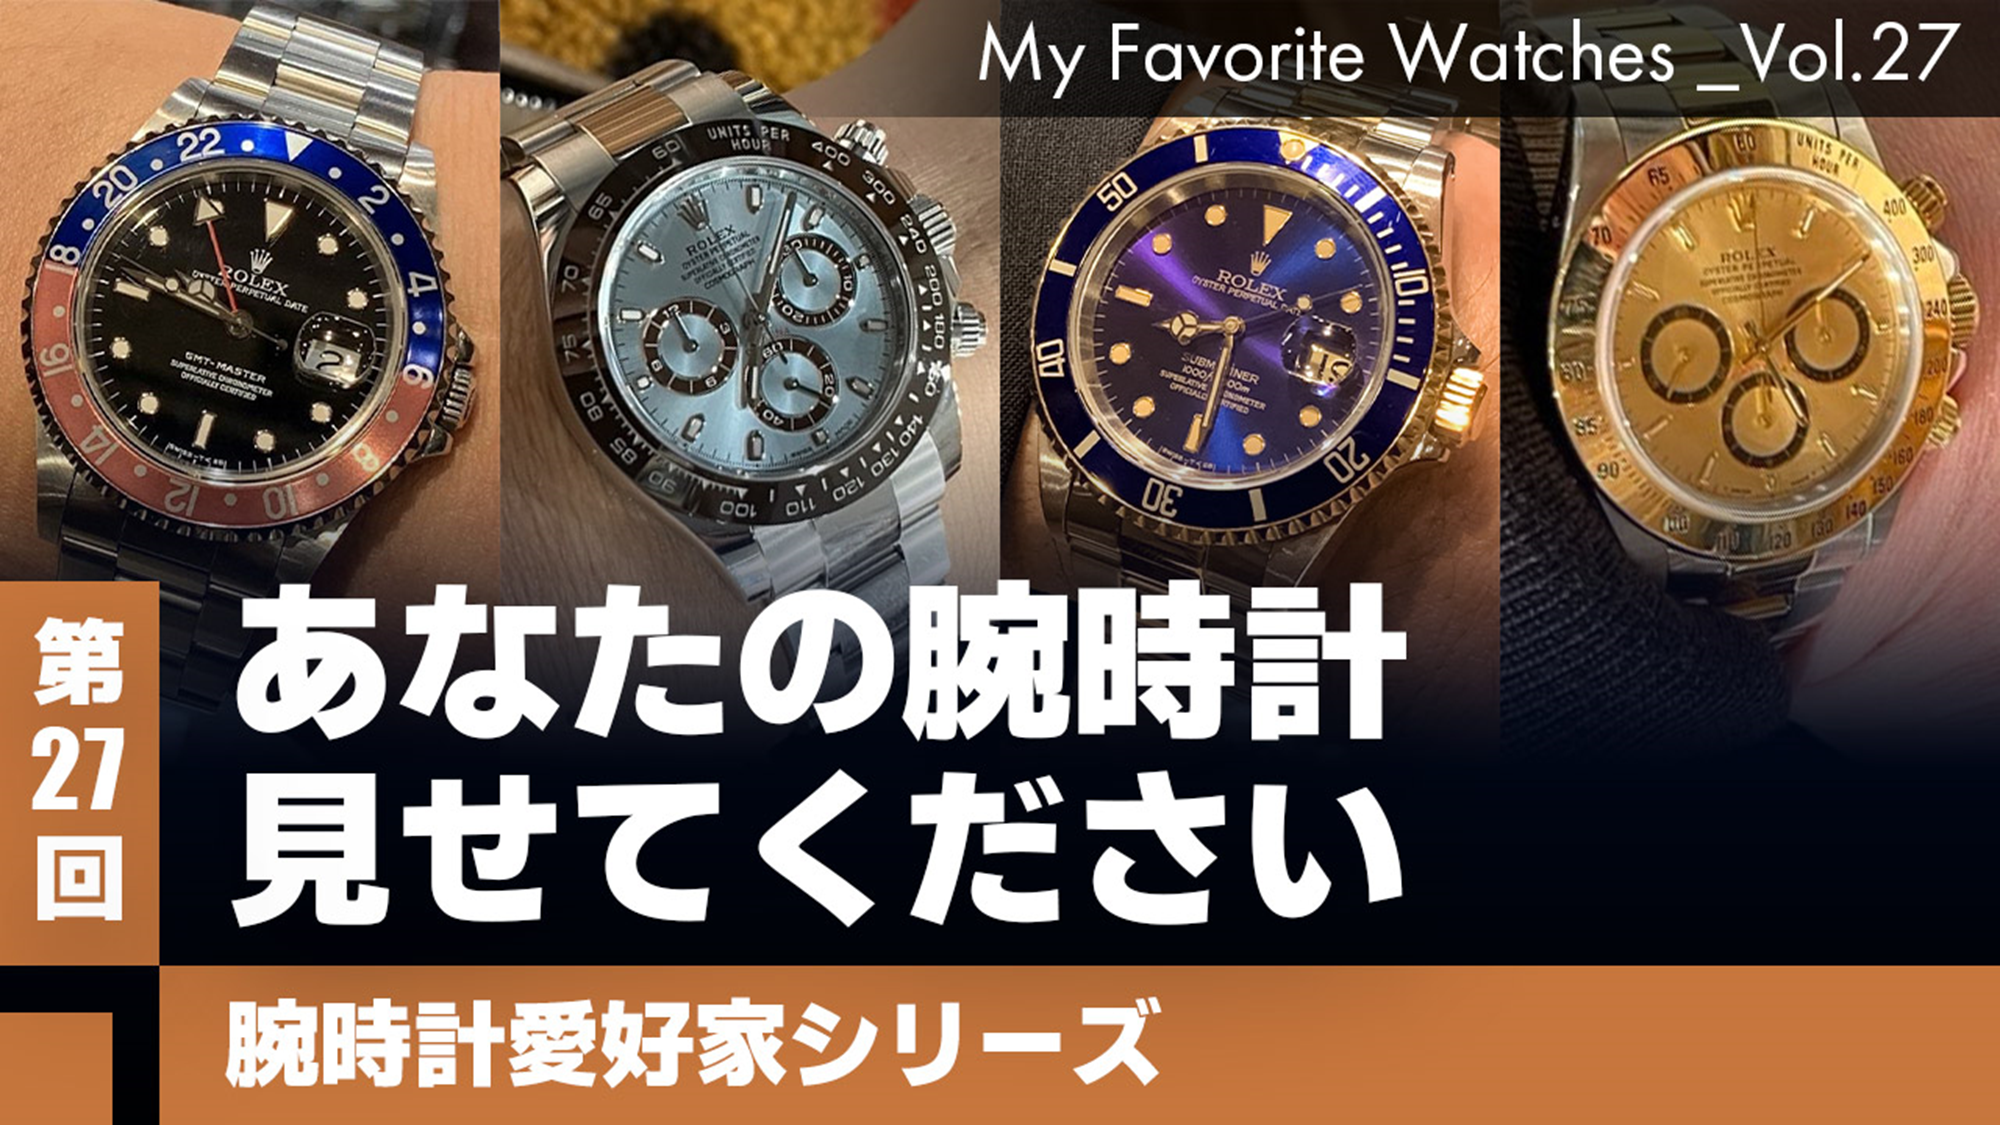 【腕時計愛好家シリーズ】 My Favorite Watches _Vol.27 あなたの腕時計見せてください